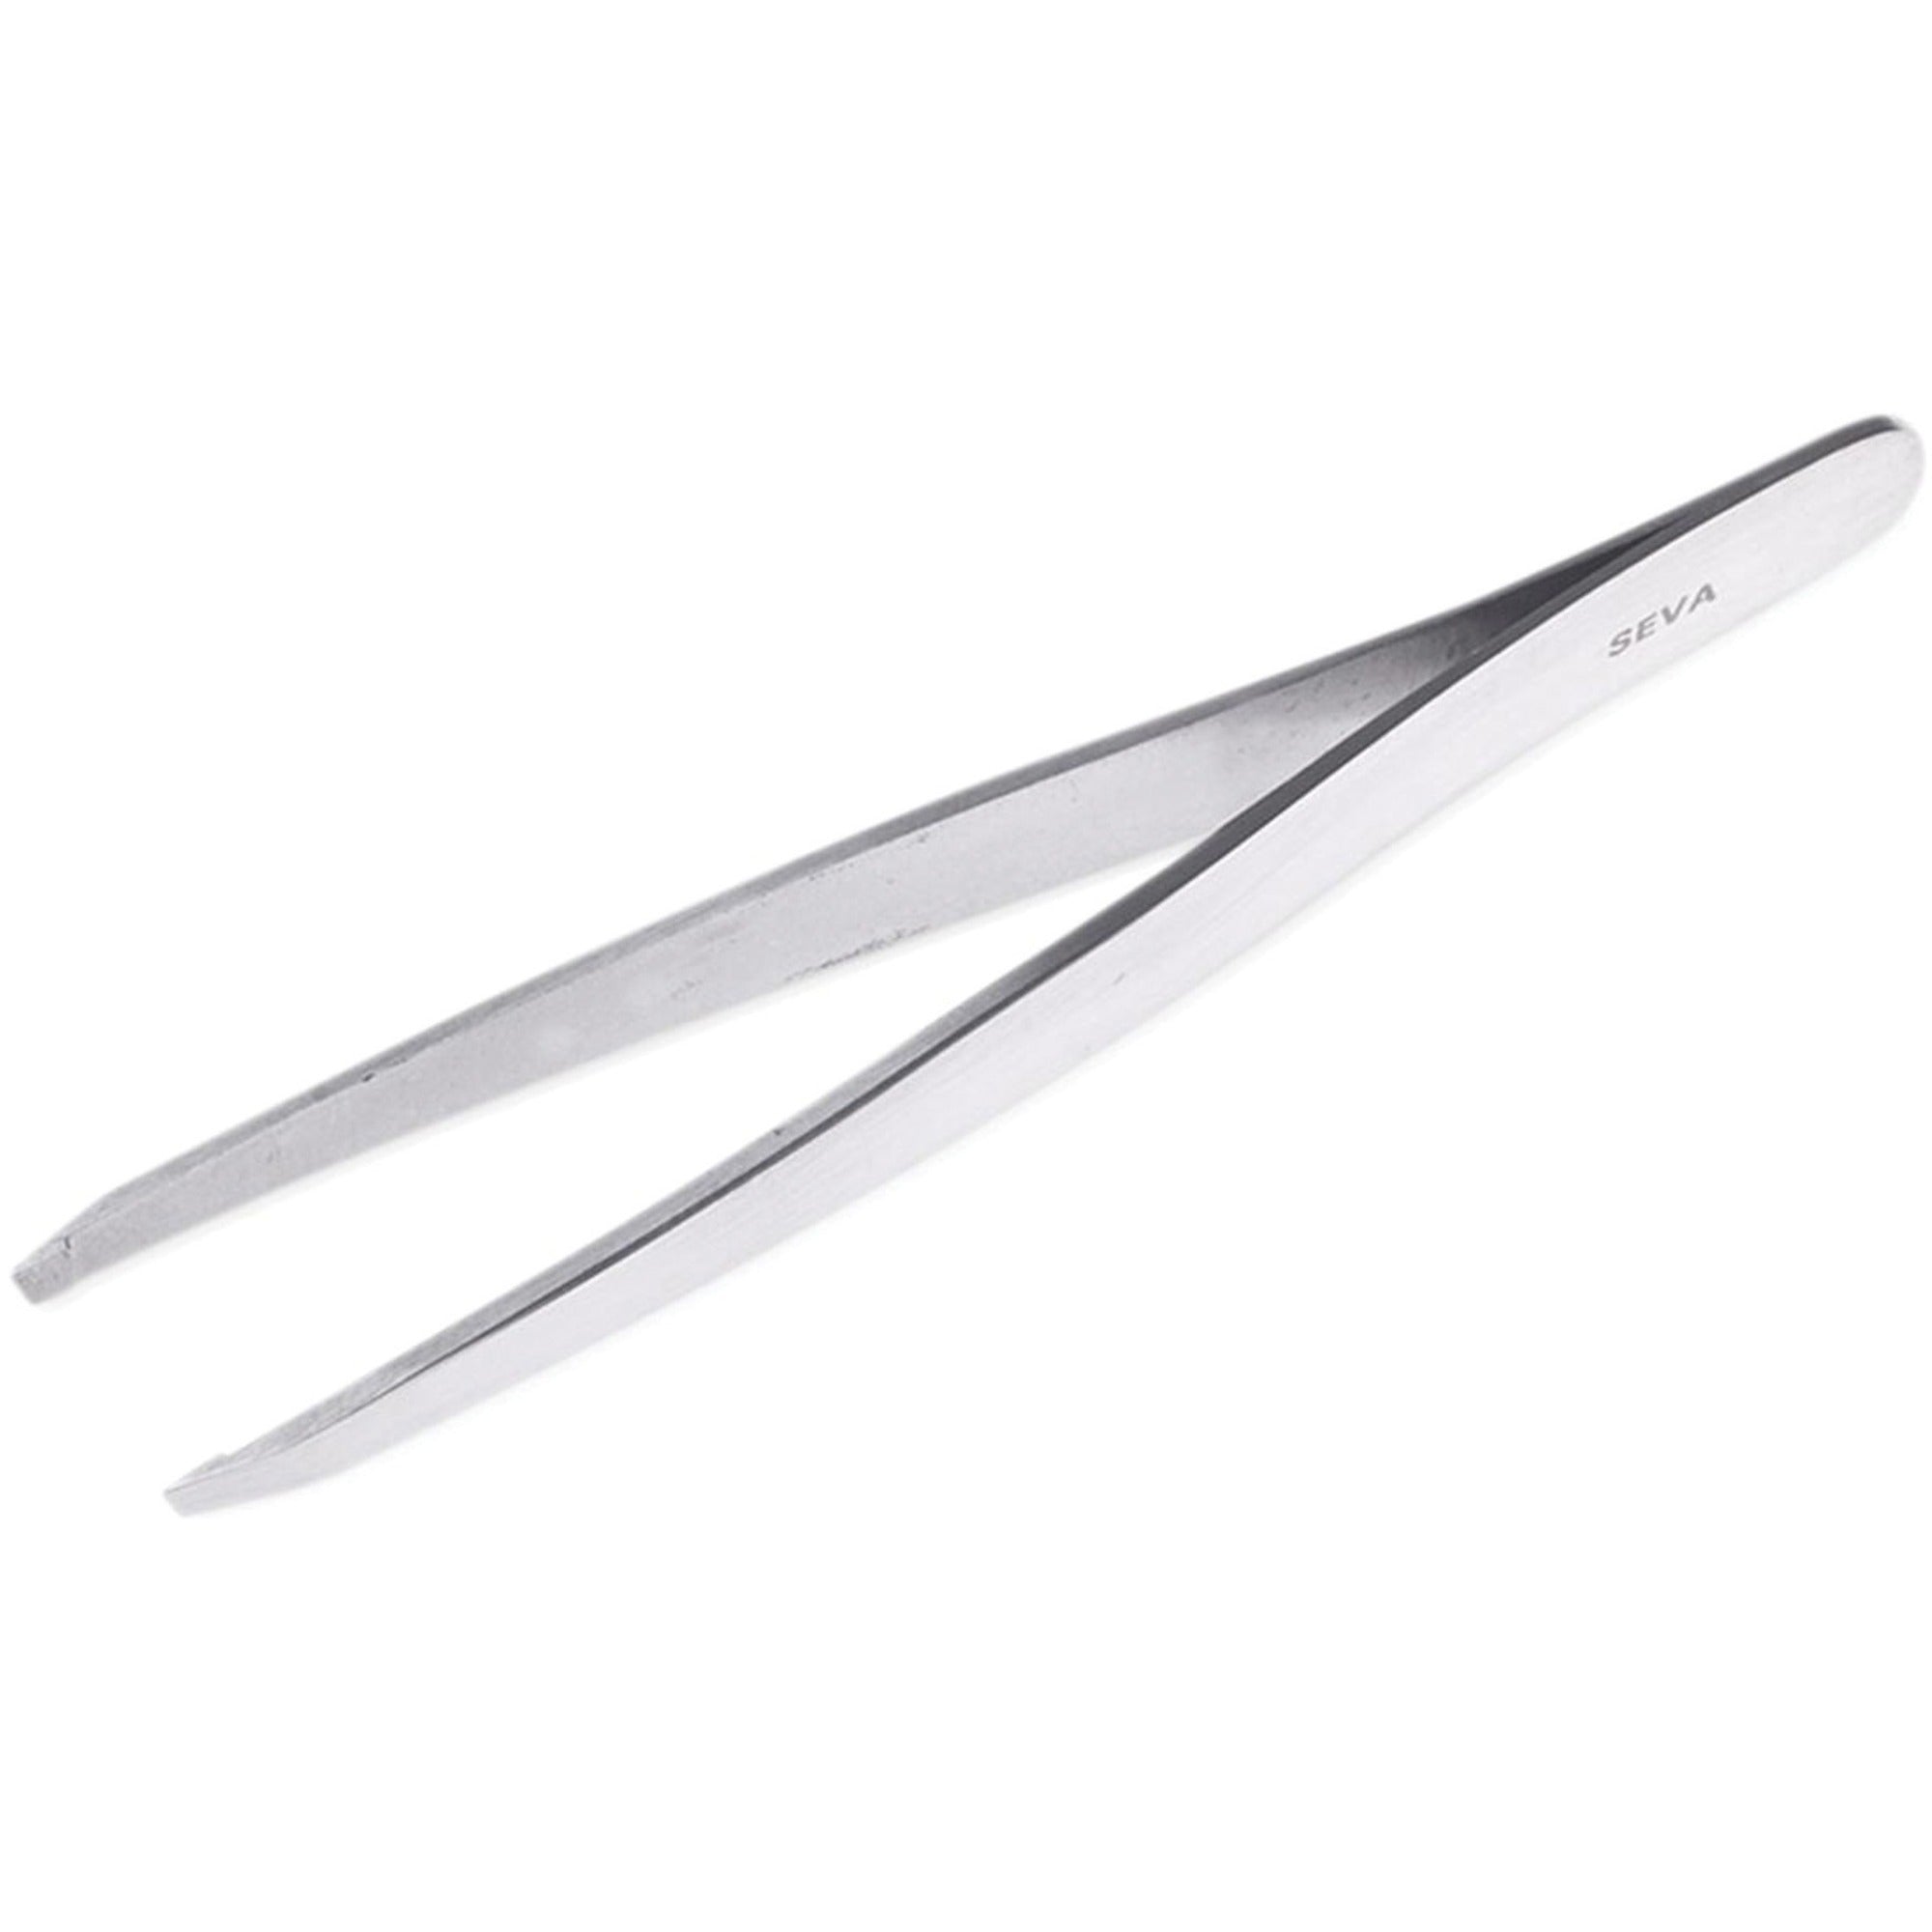 medline-nonsterile-tweezers-for-eyebrow-durable-latex-free-stainless-steel-stainless-steel_miimds10700 - 1